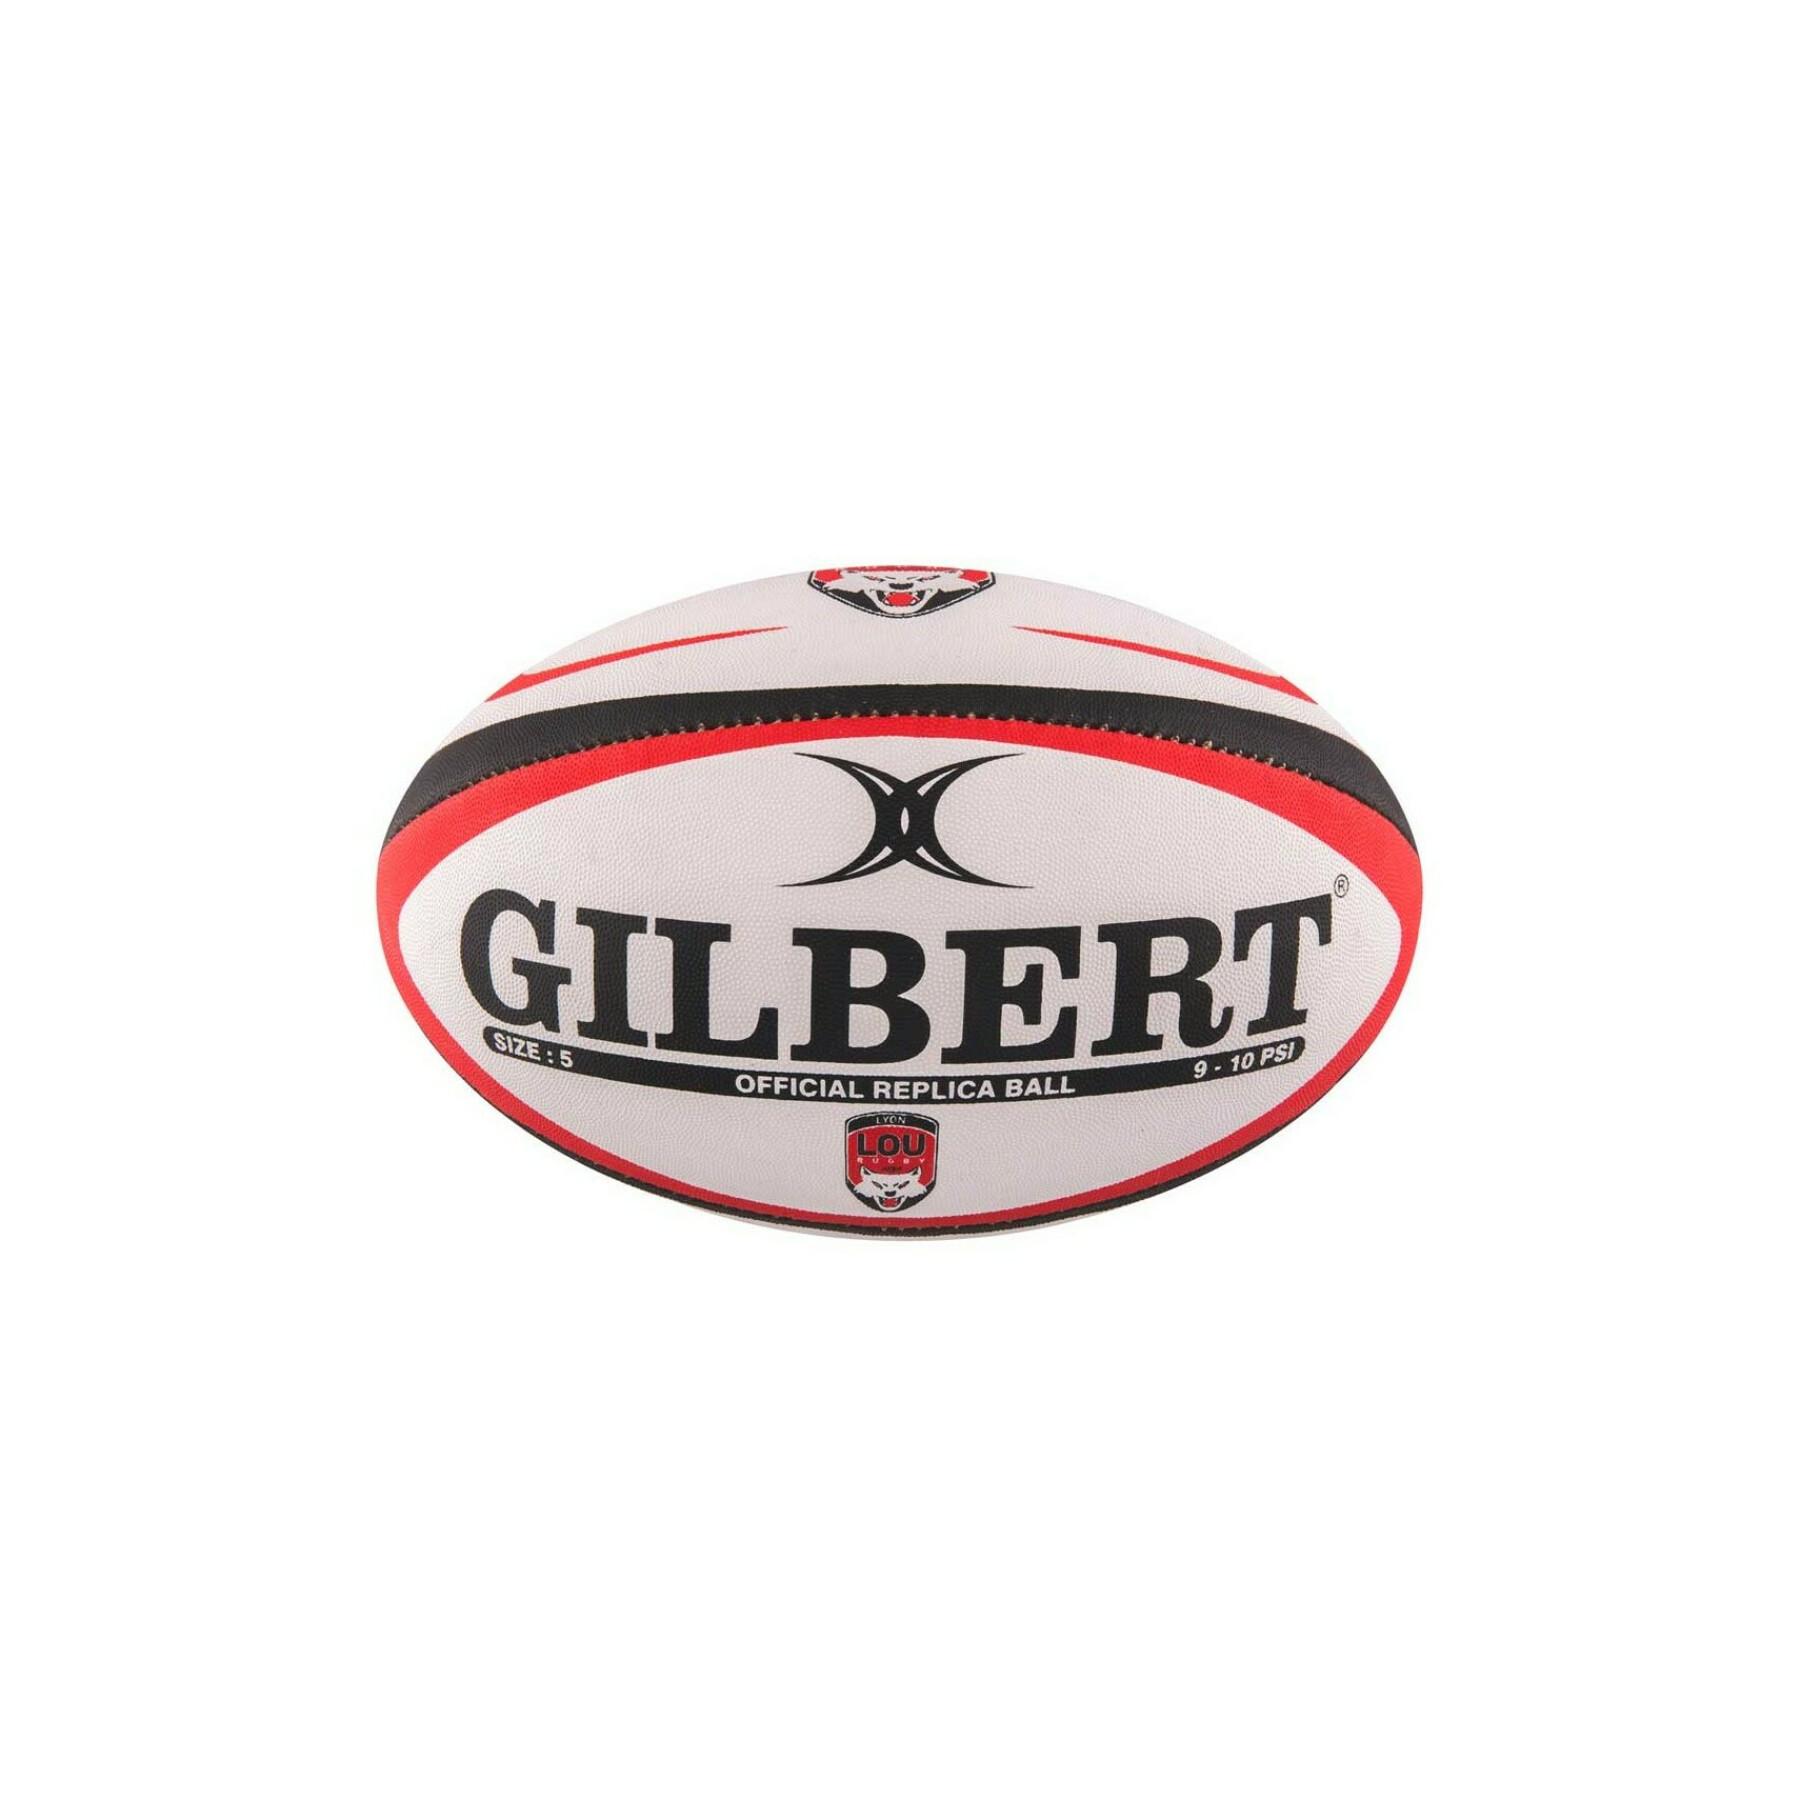 Ballon de rugby Gilbert Lyon (taille 5)